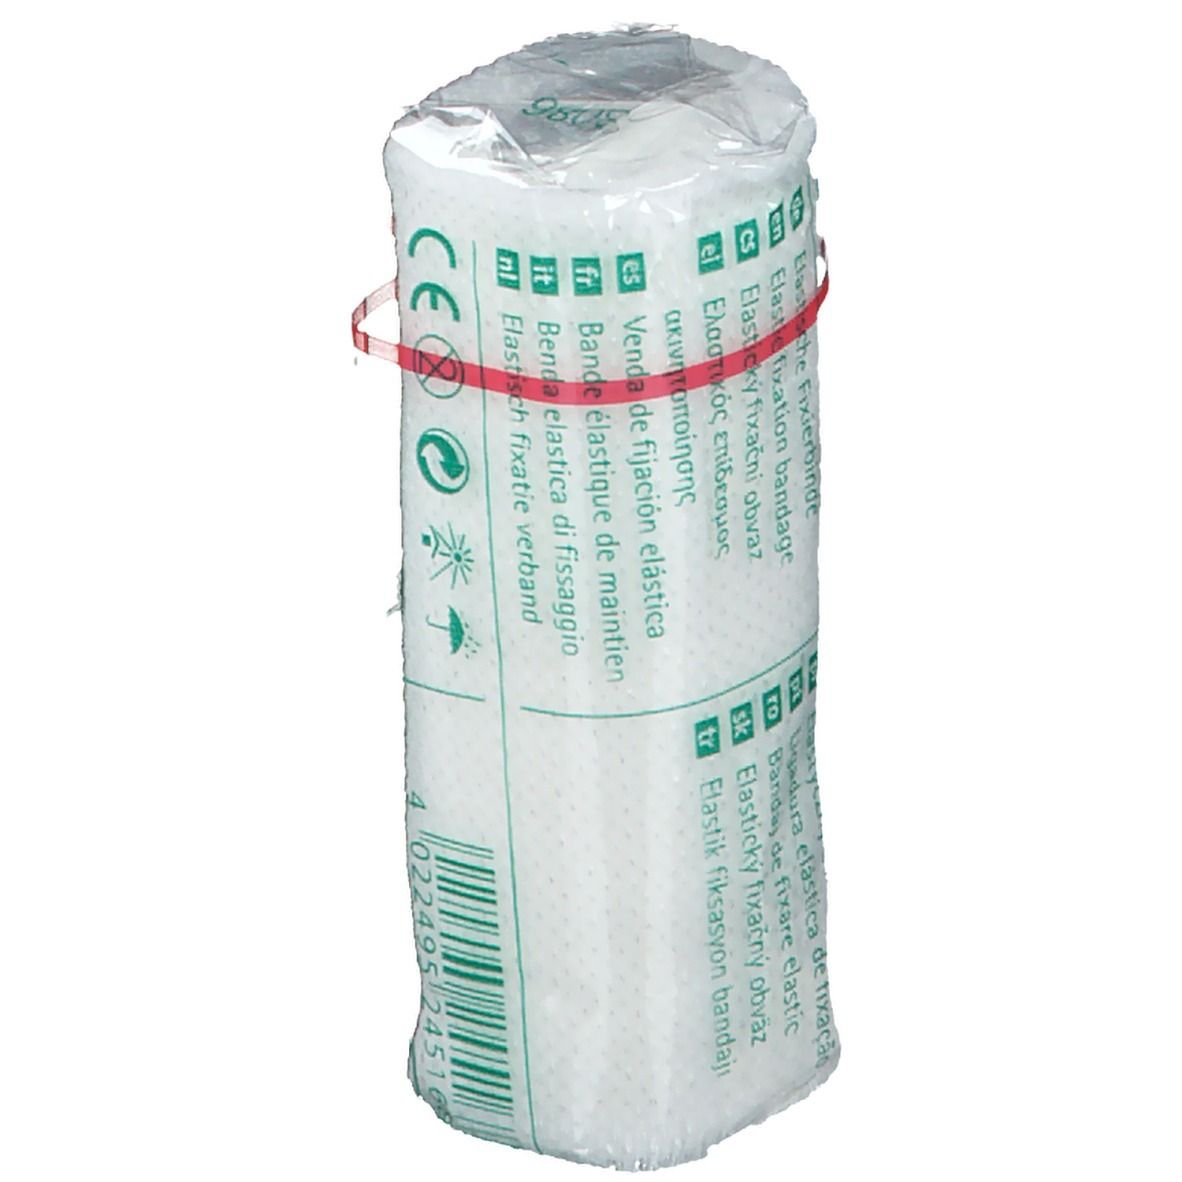 Askina® Elast fine Fixation Bandage